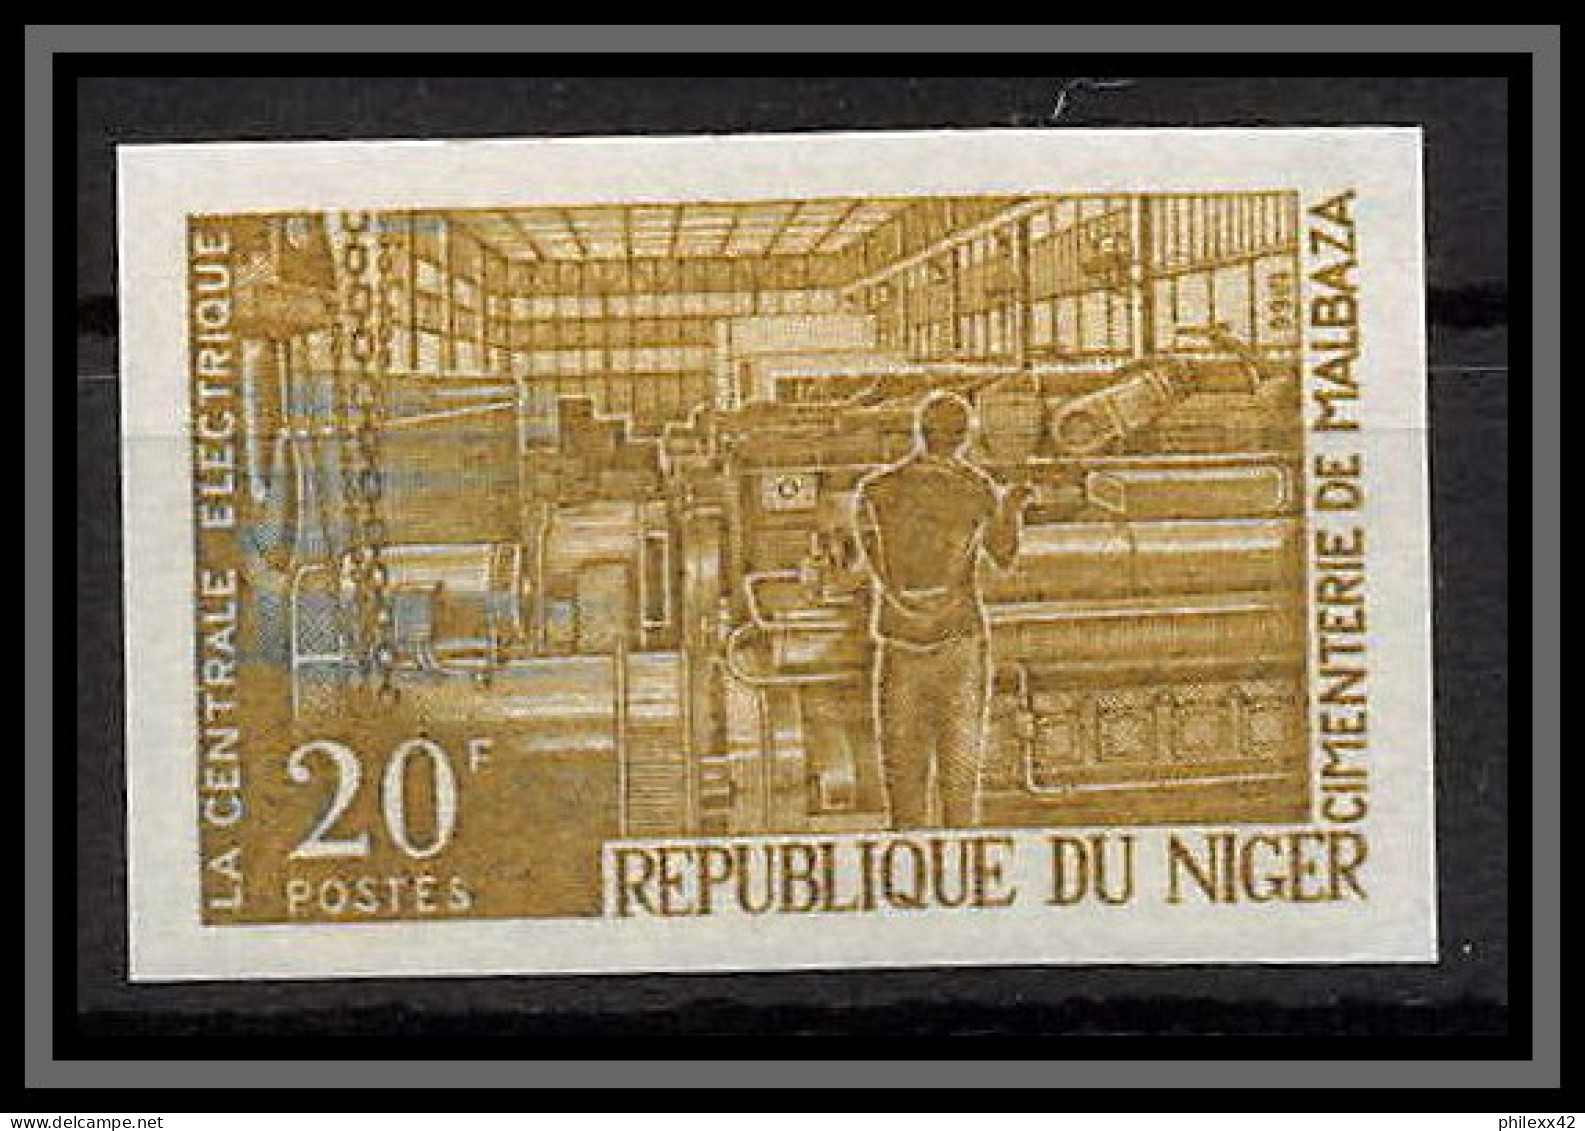 93369 Niger N°187 Centrale Electrique 1966 Electric Power Station Essai Proof Non Dentelé Imperf ** MNH - Electricity